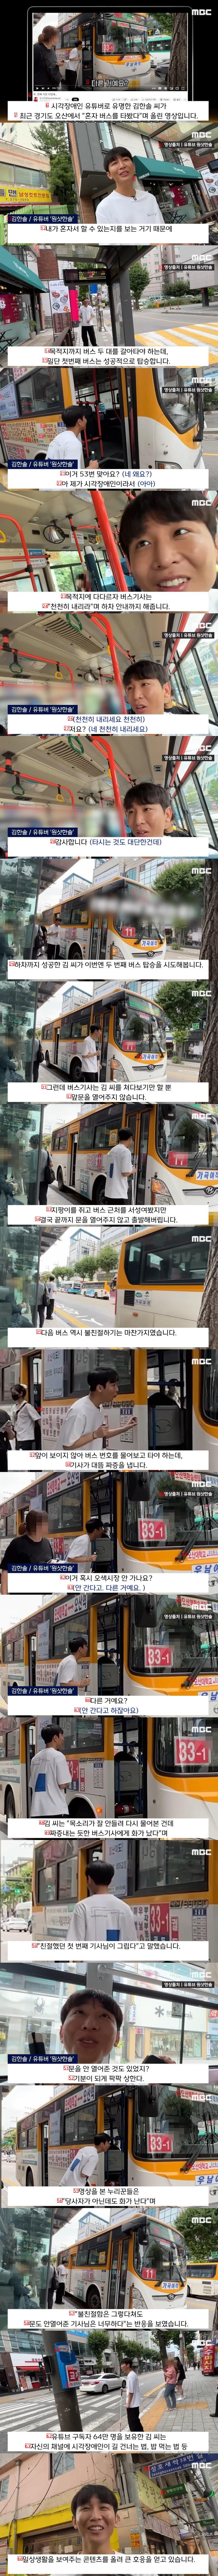 京畿道で一人でバスに乗ろうとした視覚障害者YouTuber